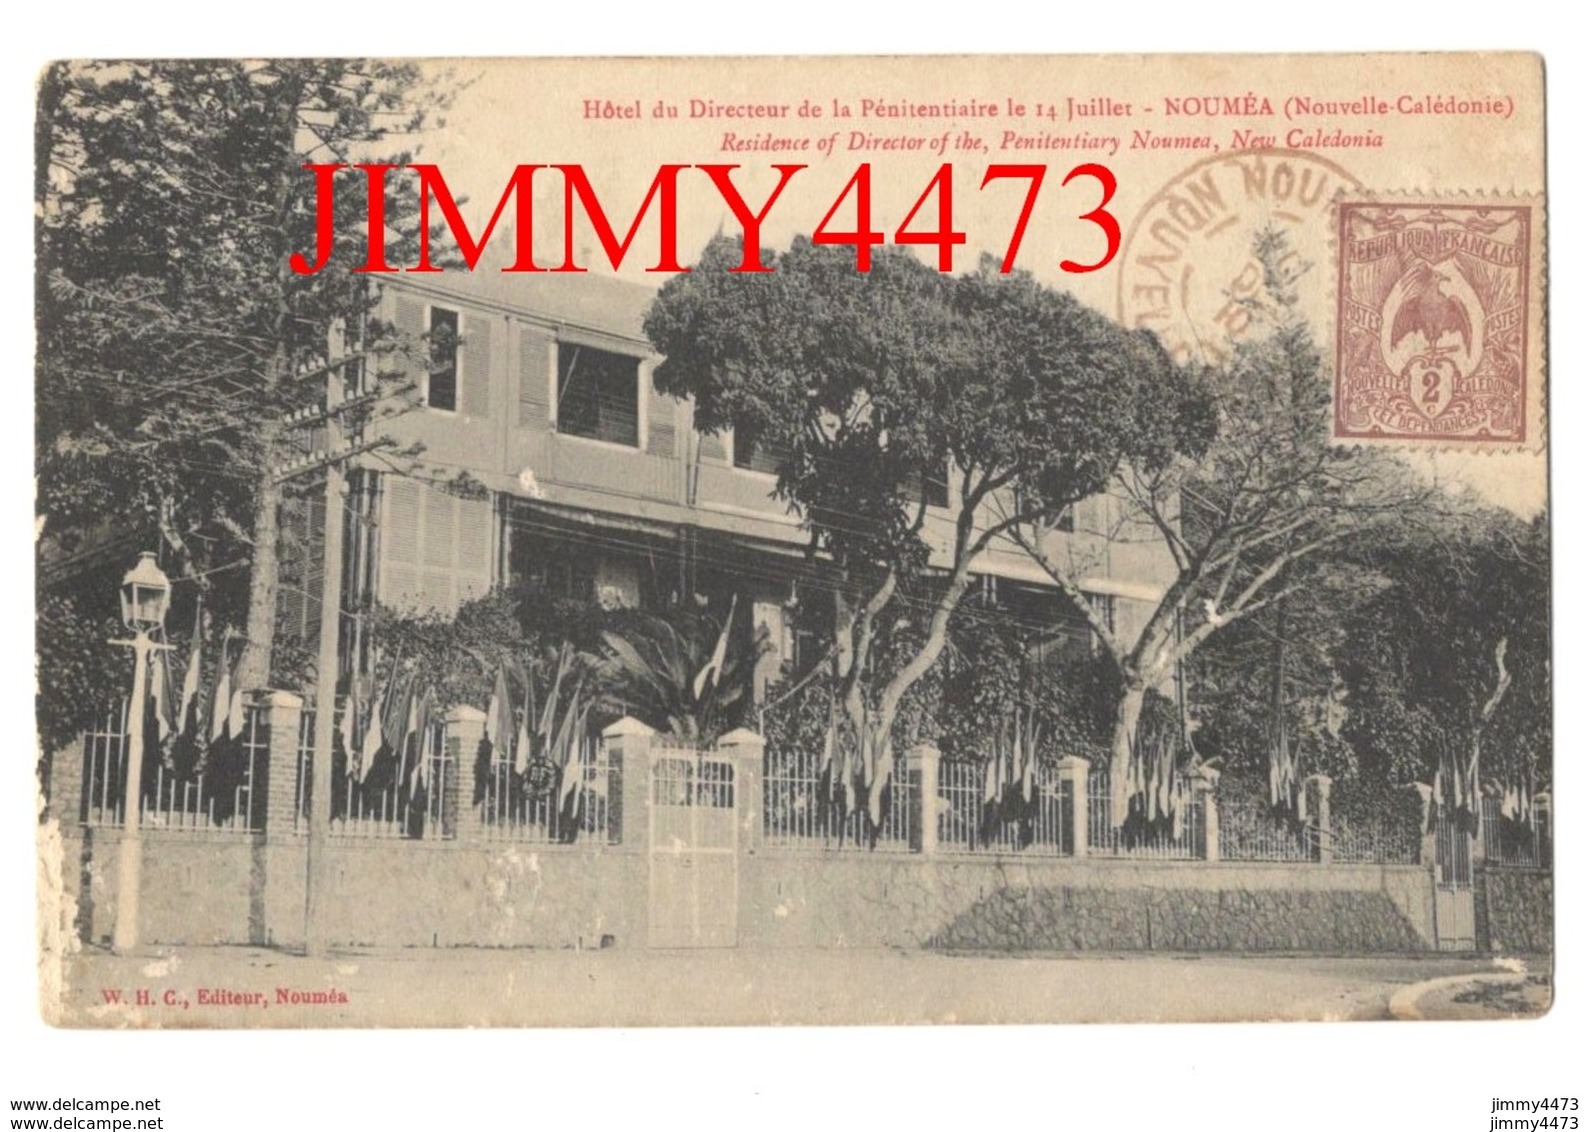 CPA - Hôtel Du Directeur De La Pénitentiaire Le 14 Juillet 1910 - NOUMEA Nouvelle Calédonie - Edit. W. H. C. à Nouméa - Nouvelle-Calédonie